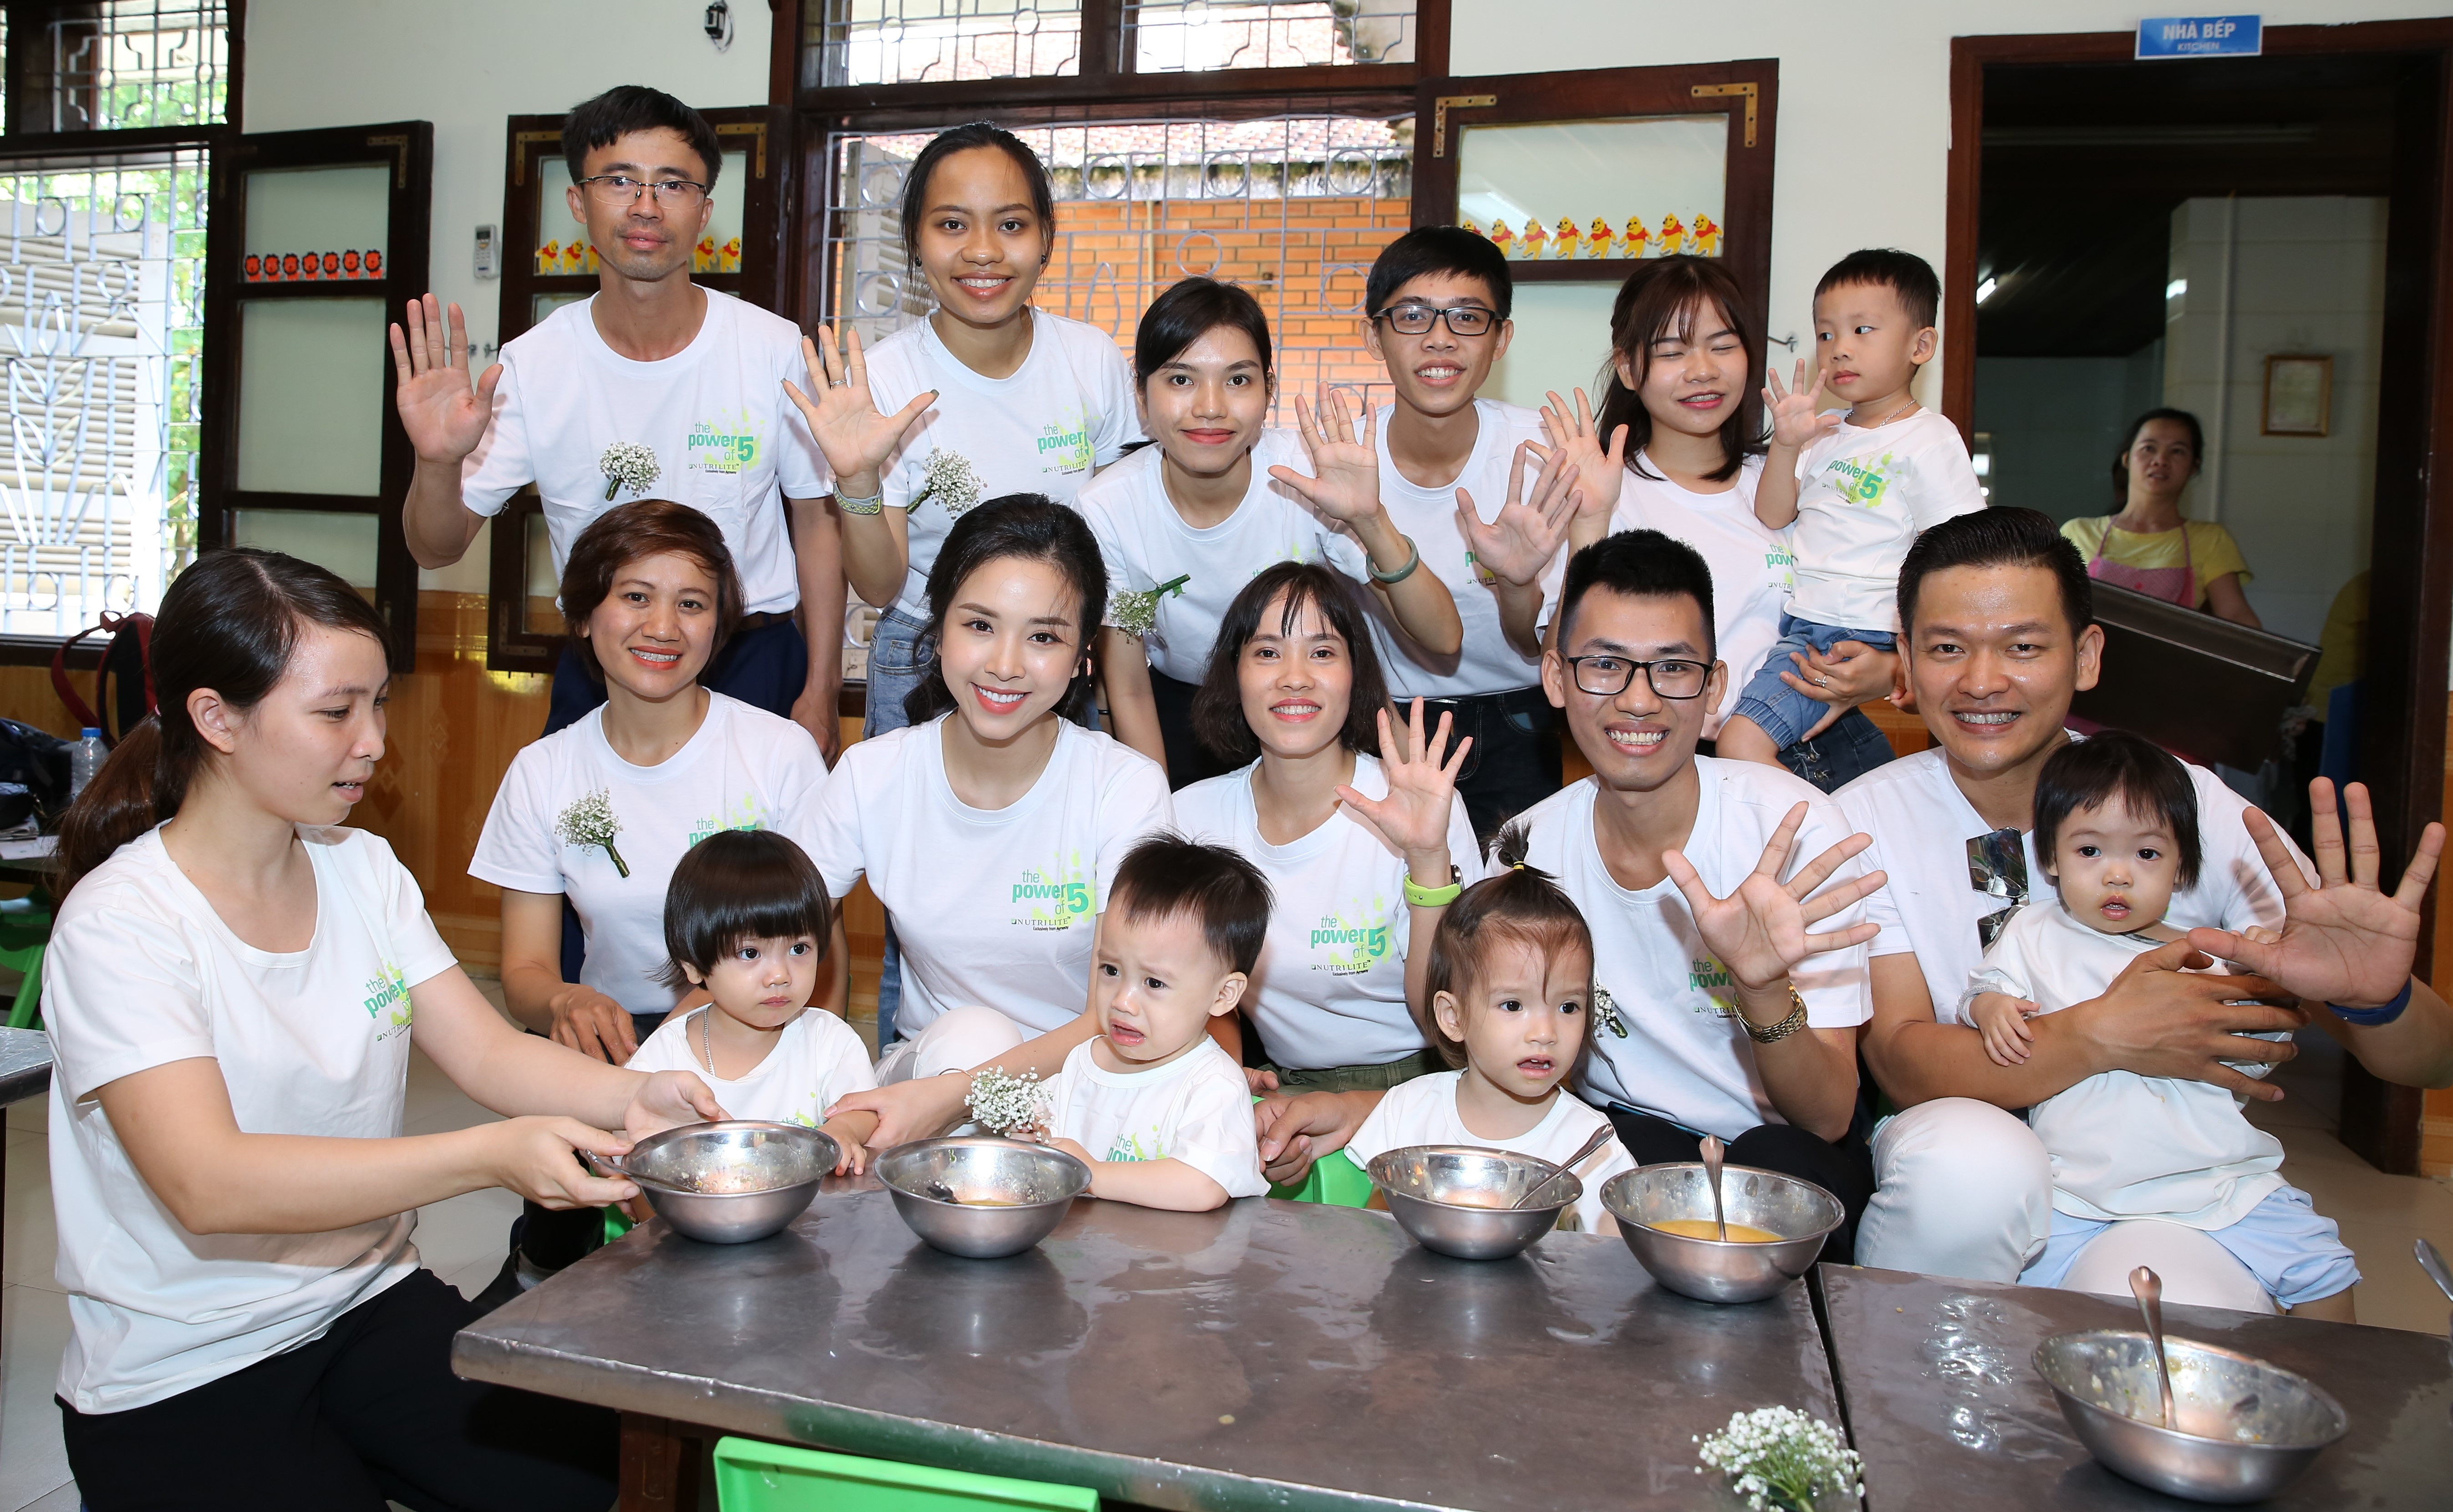 Tập đoàn Amway sẽ cung cấp miễn phí 1.024.344 hộp sản phẩm Nutrilite Little Bits cho 85.362 trẻ em Nghệ An và Hà Giang trong vòng 2 năm (2019 - 2020).